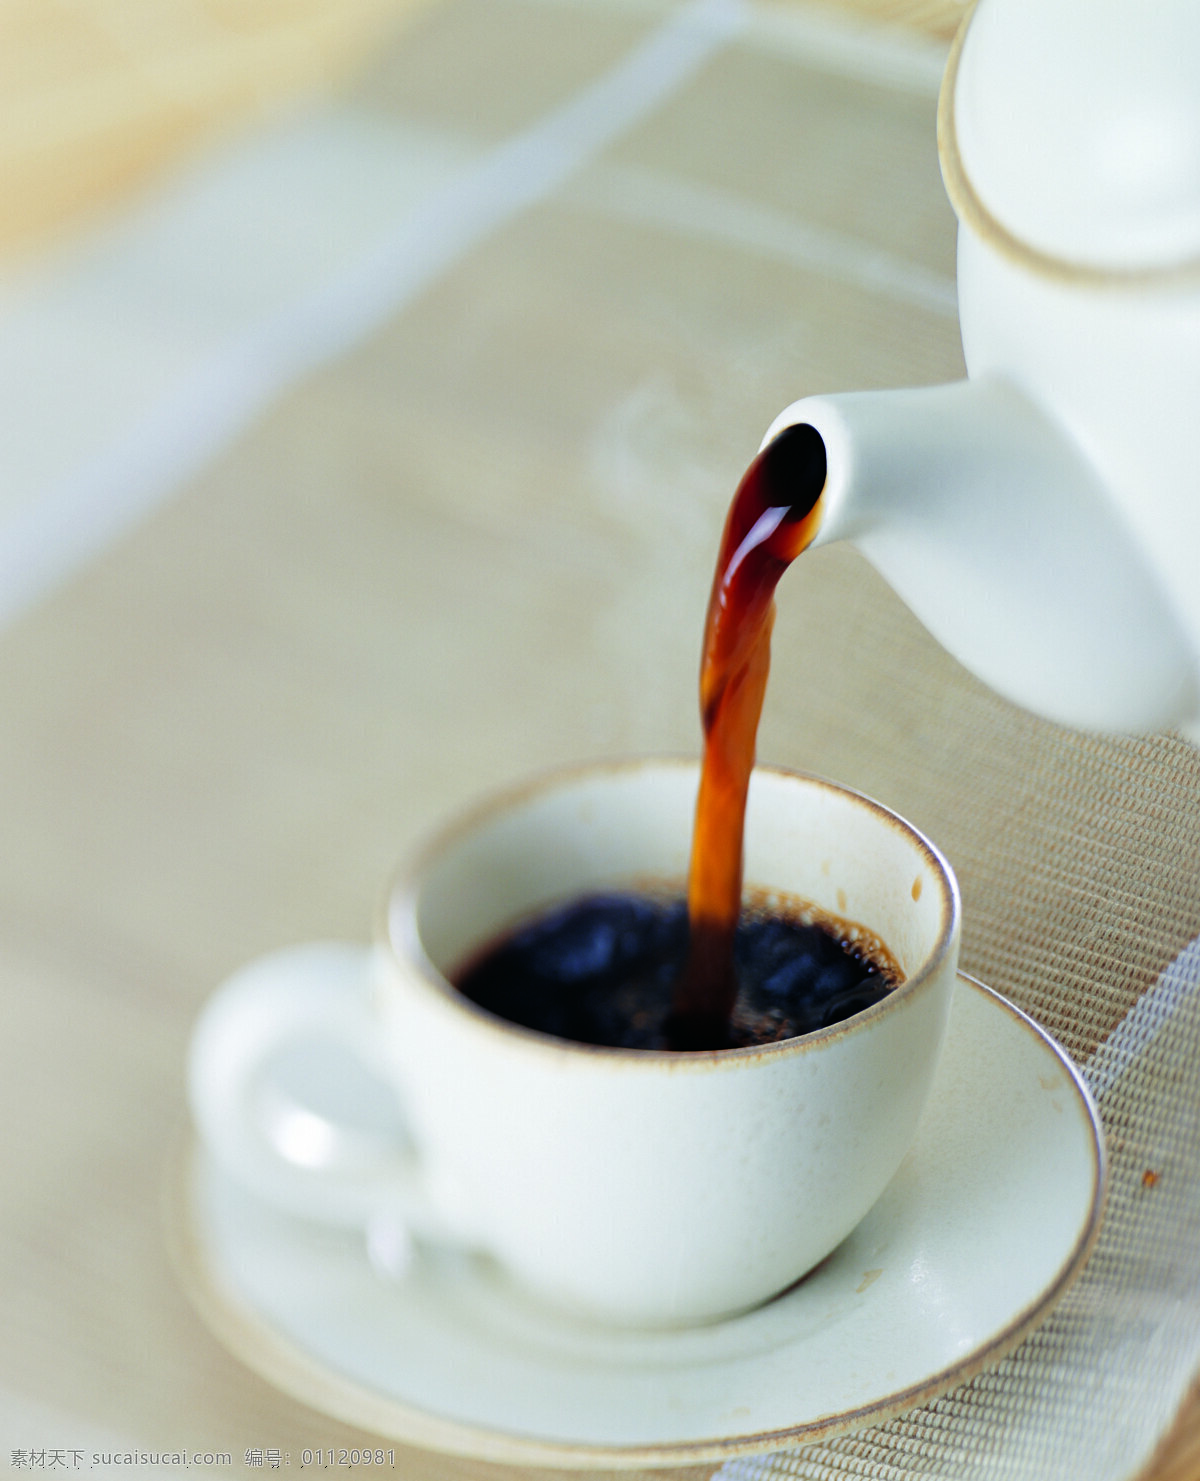 倒 出 咖啡 特写 餐具 杯子 香浓 冲咖啡 倒咖啡 高清图片 咖啡图片 餐饮美食